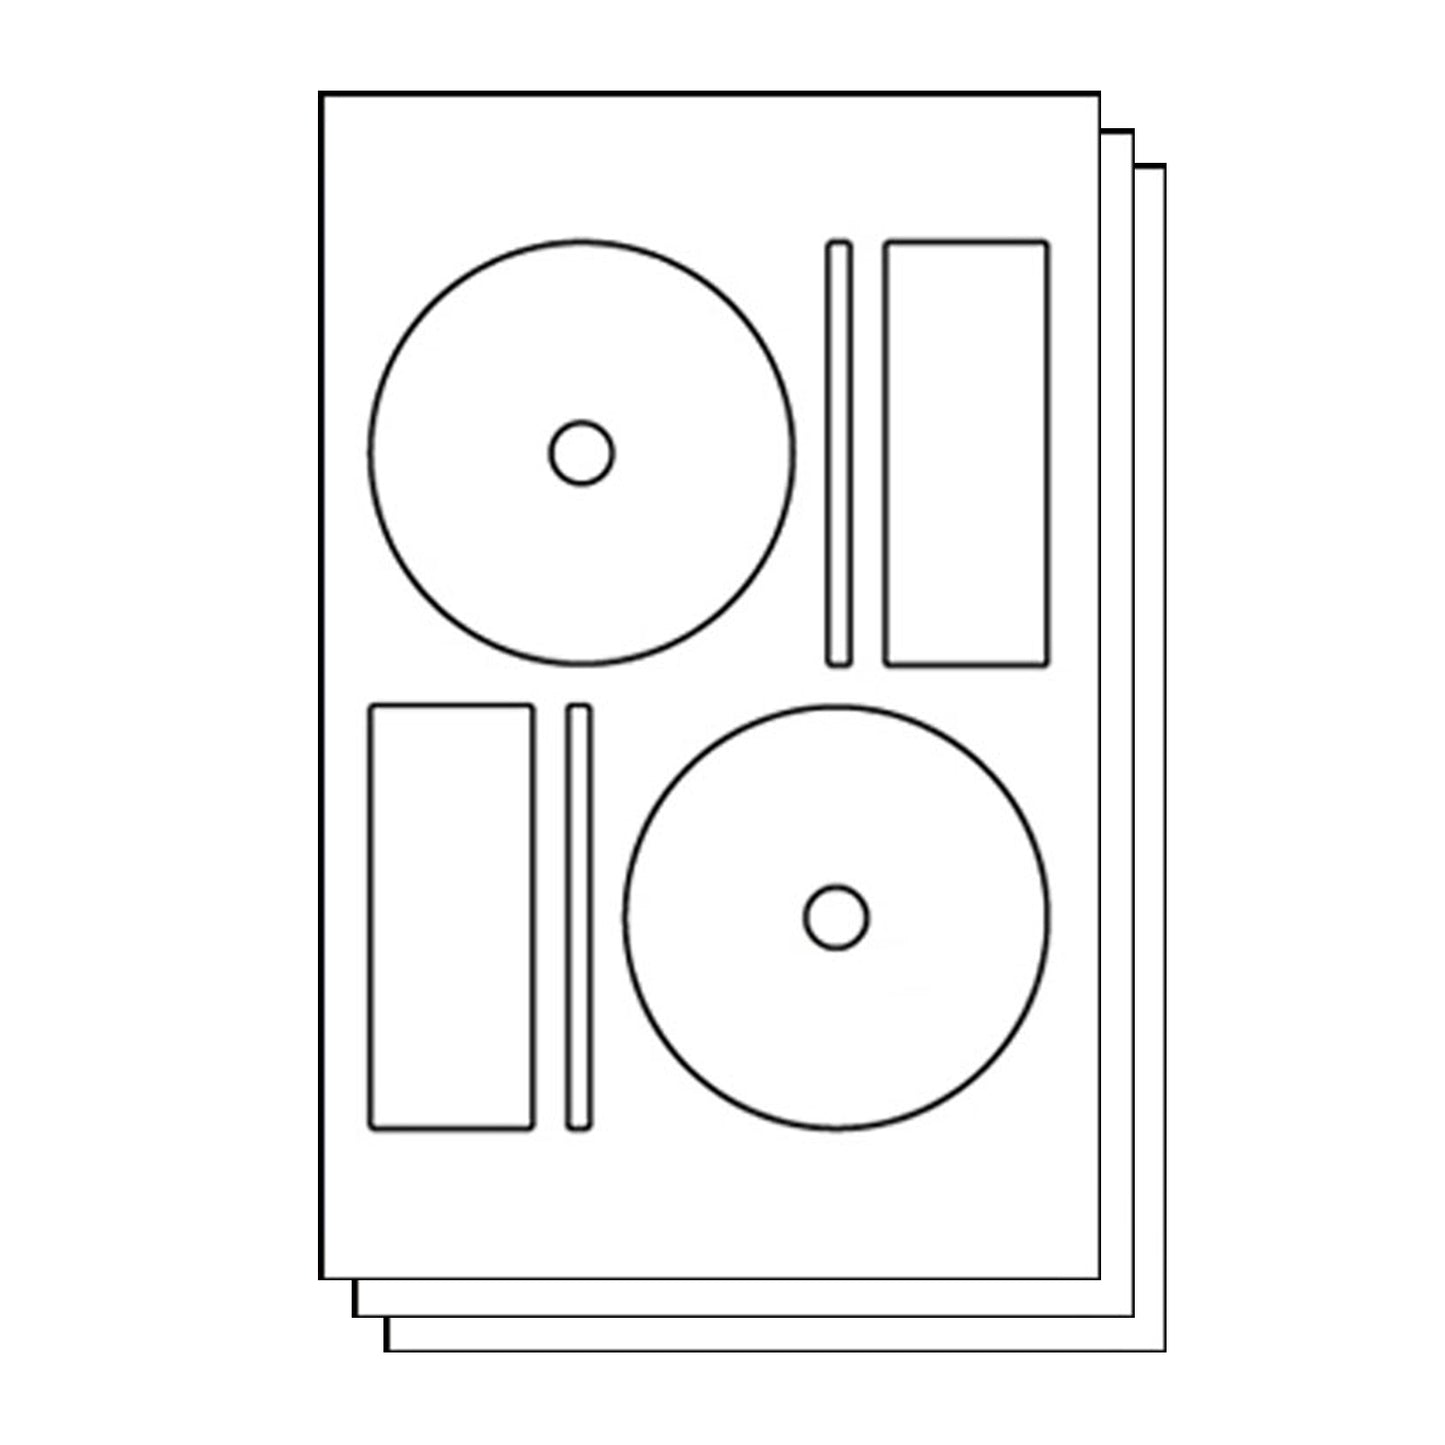 Memorex Compatible Full-face CD & DVD Labels for Inkjet & Laser Printers